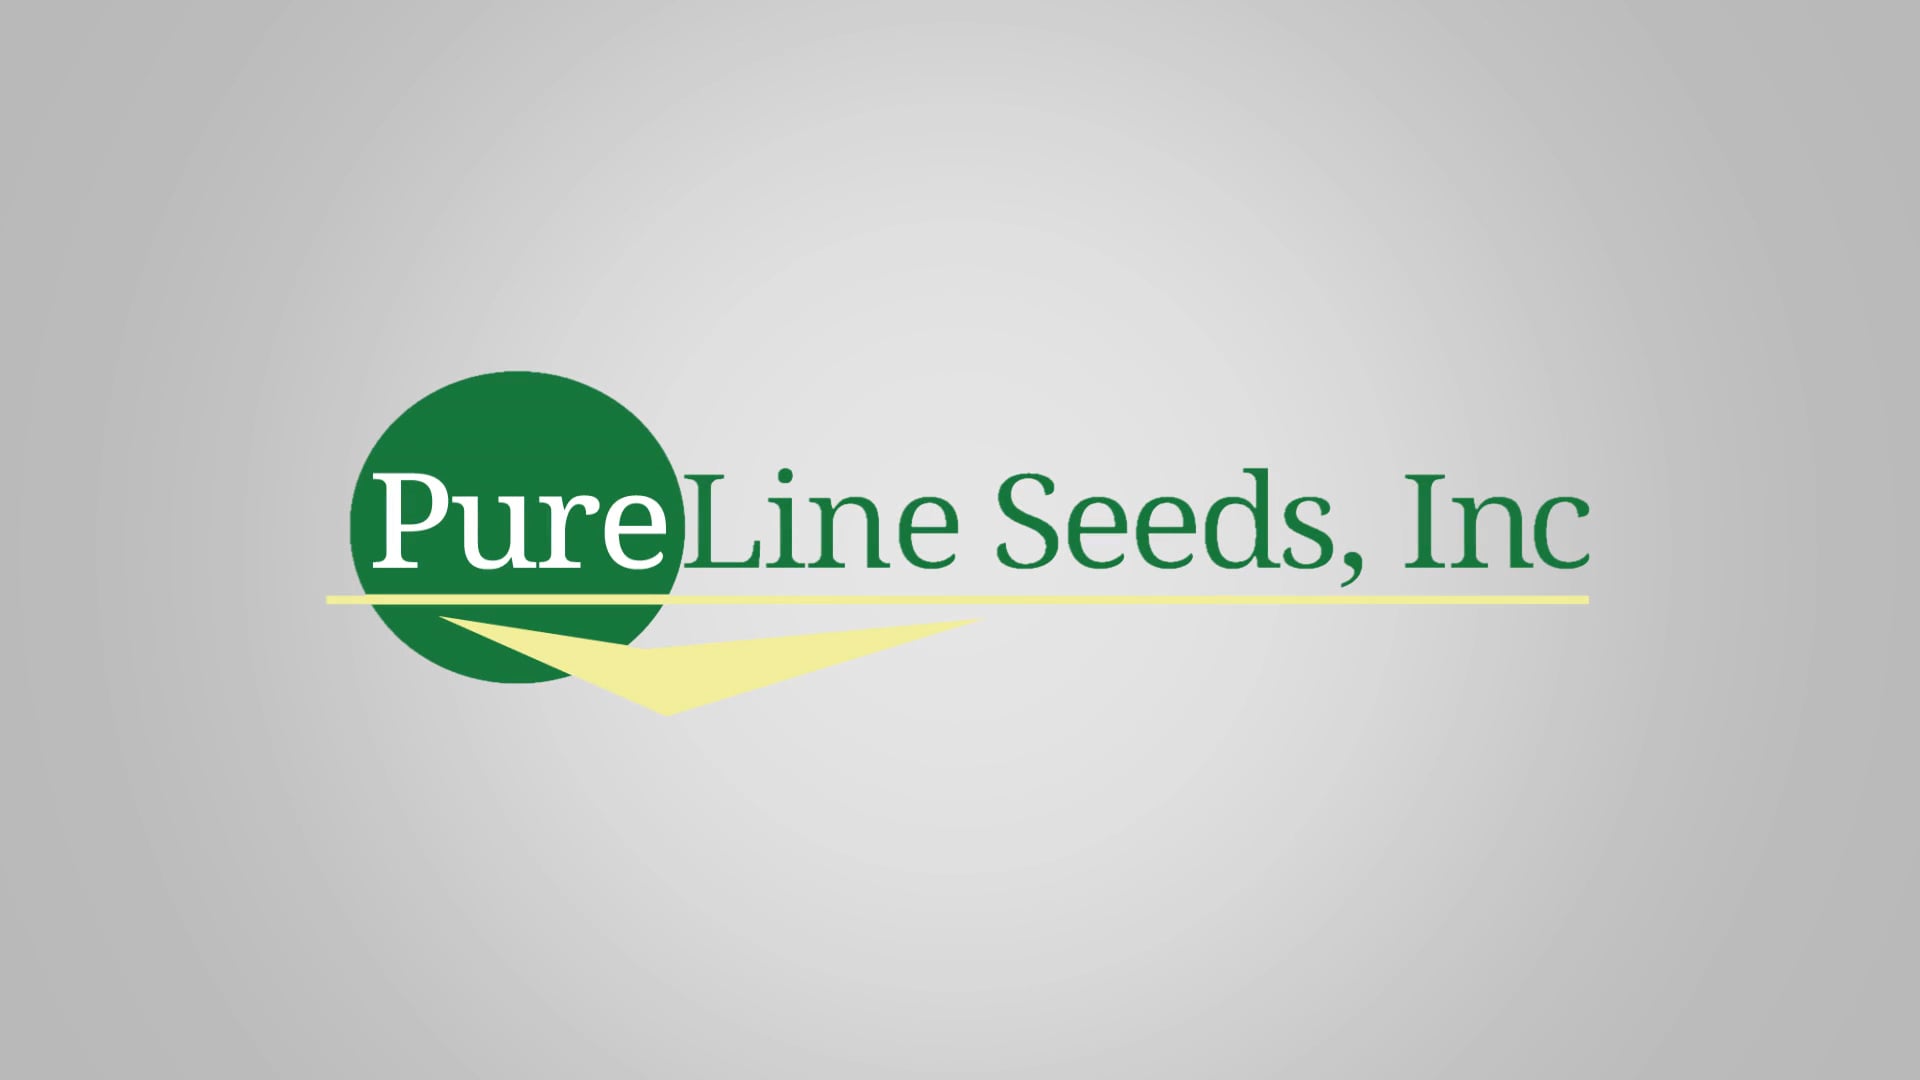 RFDTV: Pure Line Seeds